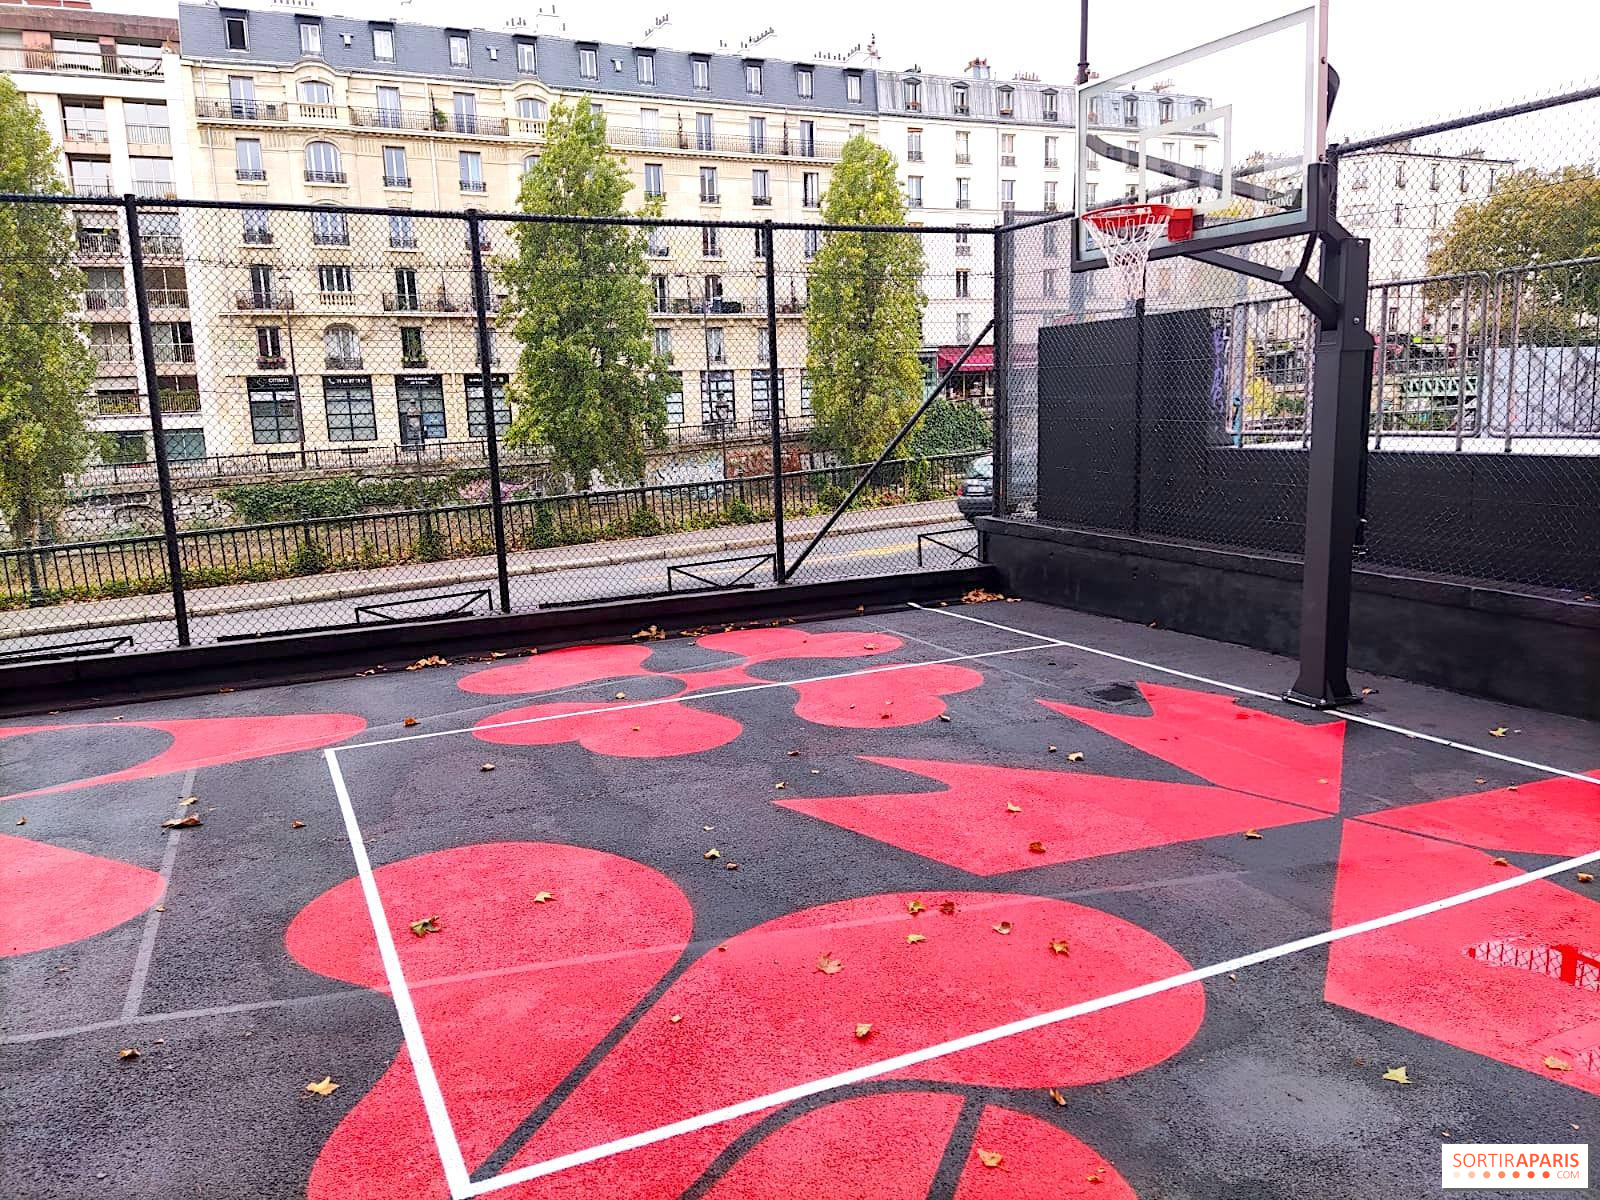 Pratiqué sur les playgrounds, le basket 3x3 débarque aux JO de Tokyo